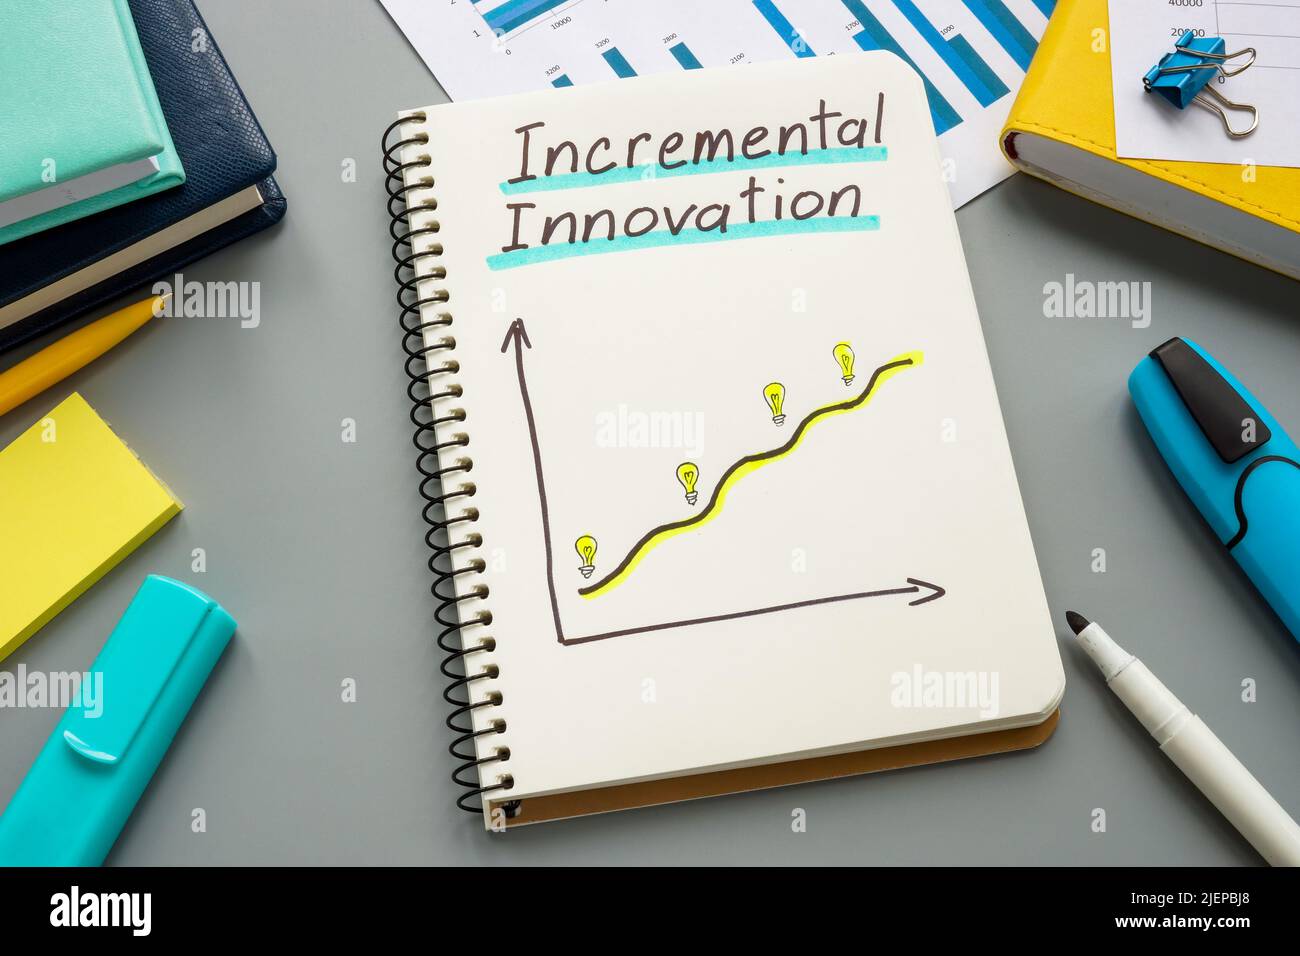 Apri il blocco note con il grafico sull'innovazione incrementale. Foto Stock